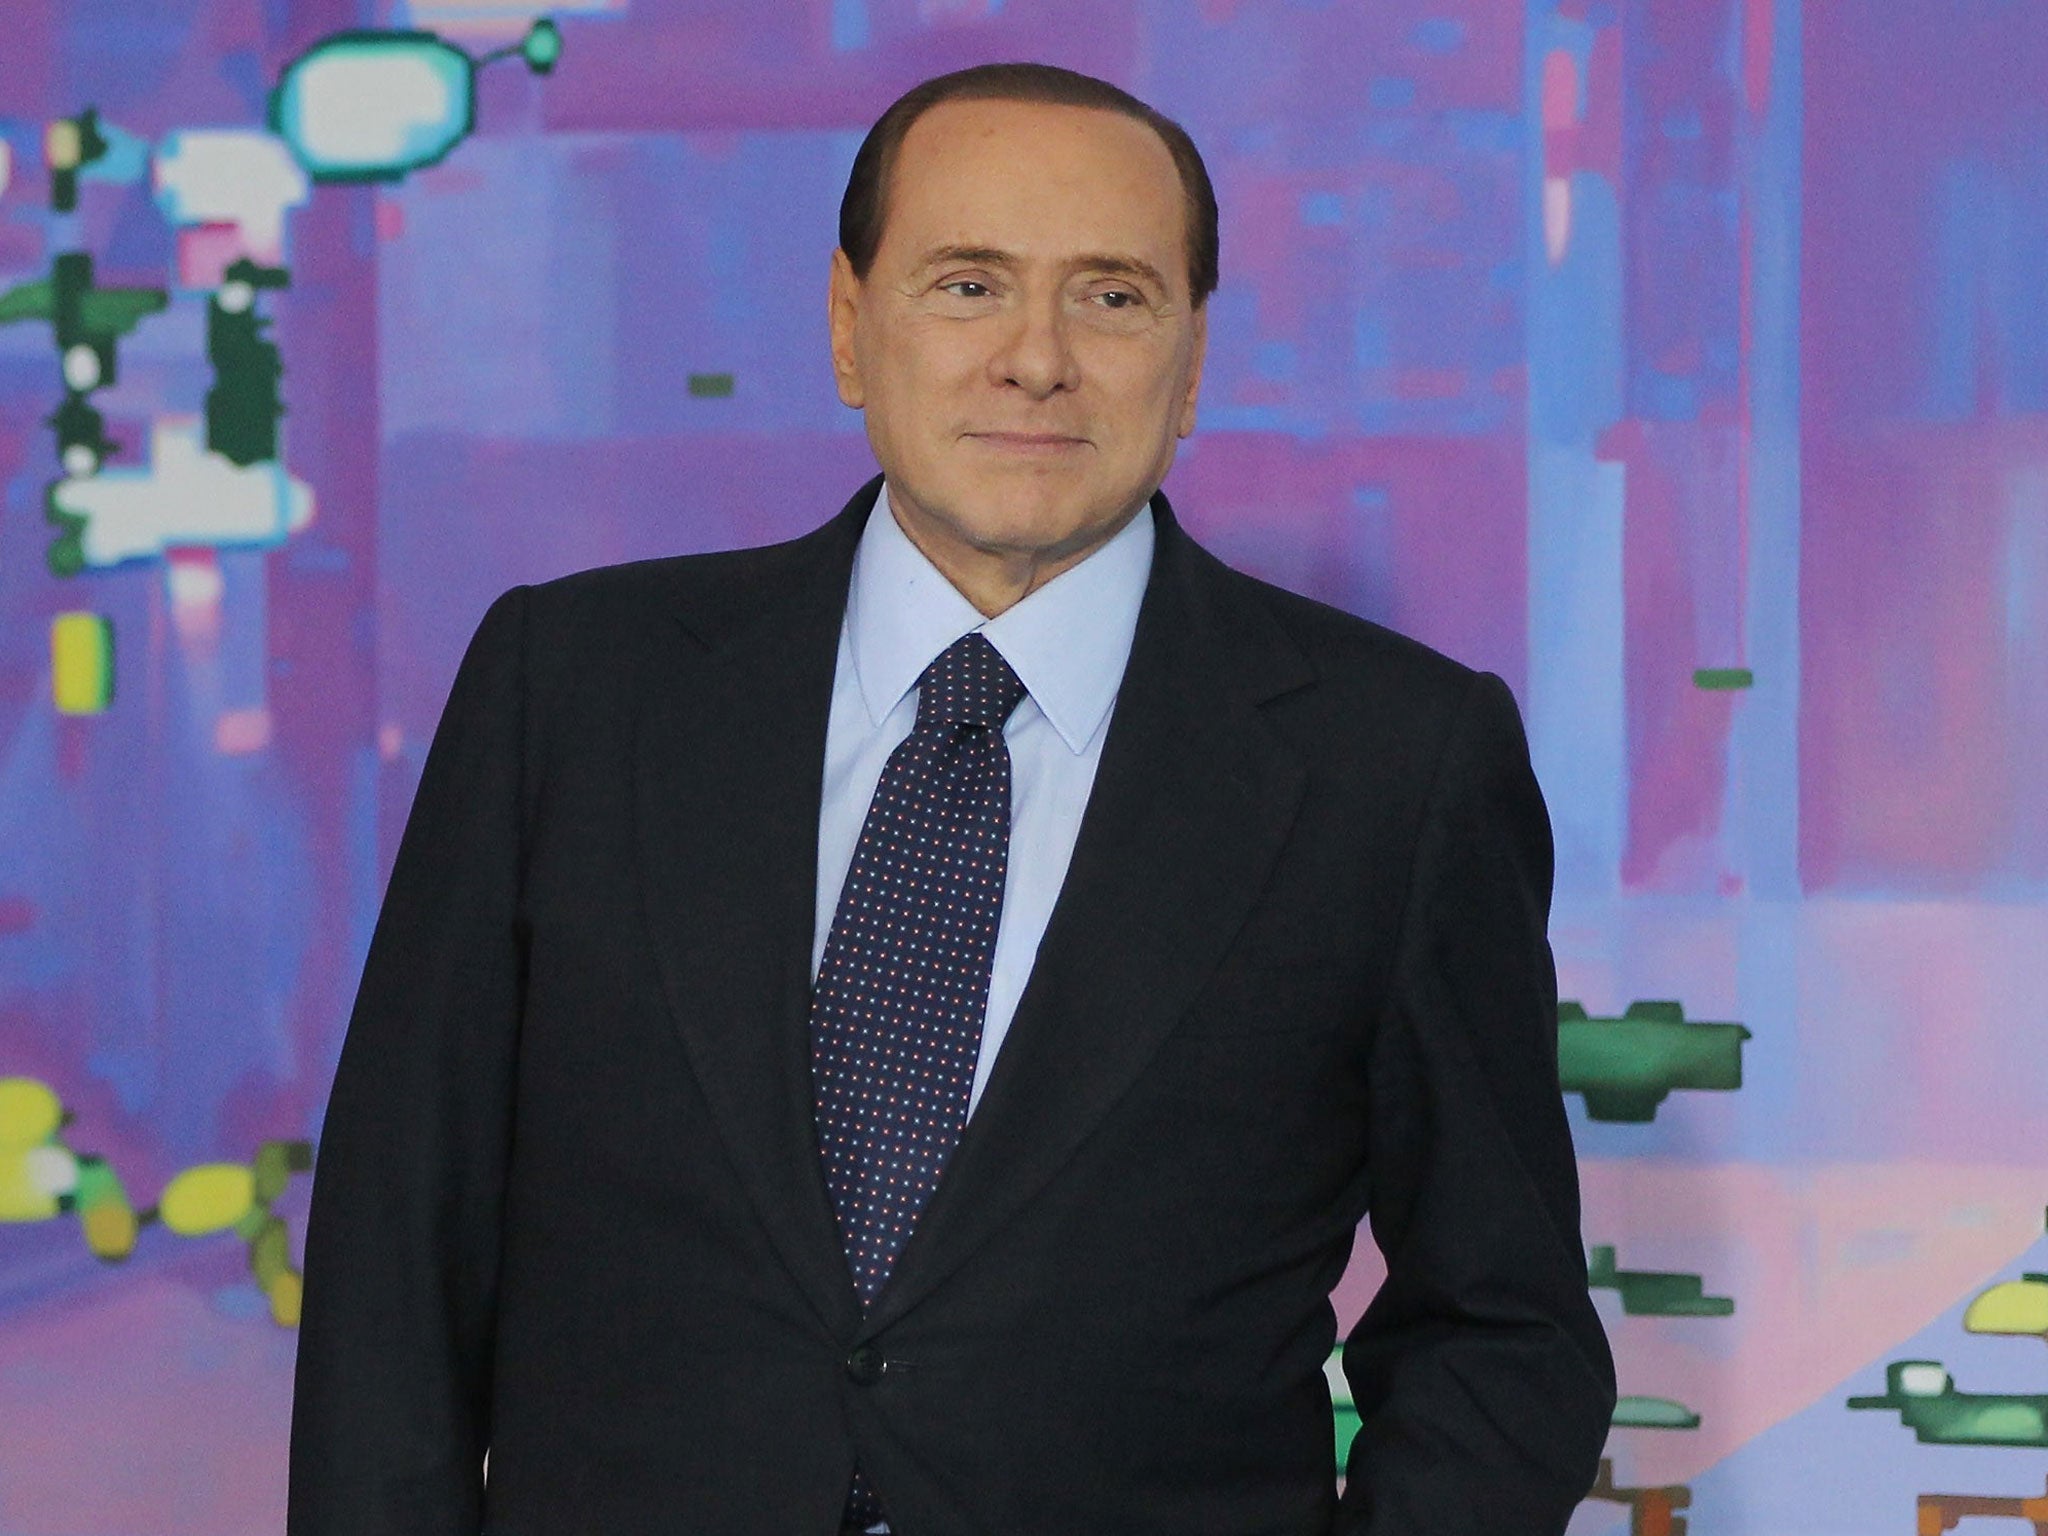 The former Italian premier, Silvio Berlusconi, has called off his political attack dogs